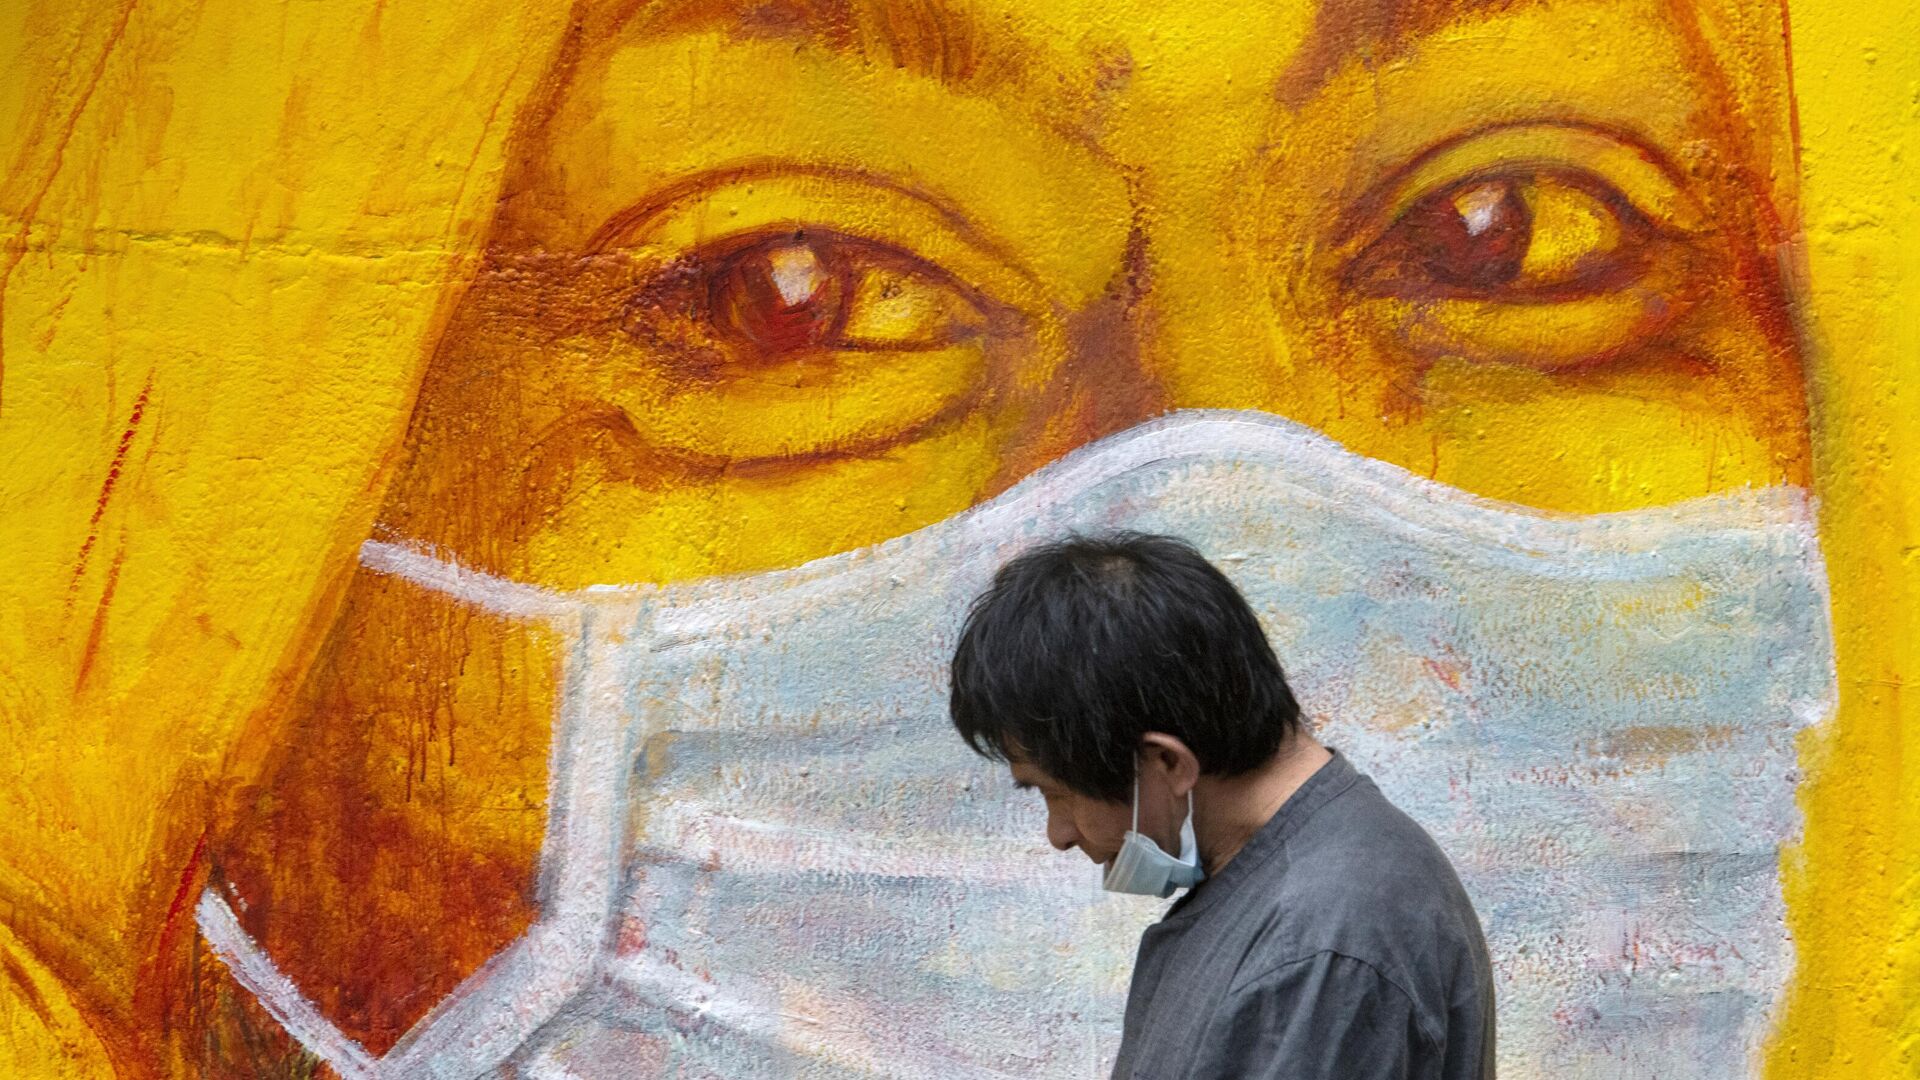 Прохожий около стены с изображением человека в маске в Гонконге - РИА Новости, 1920, 10.10.2020